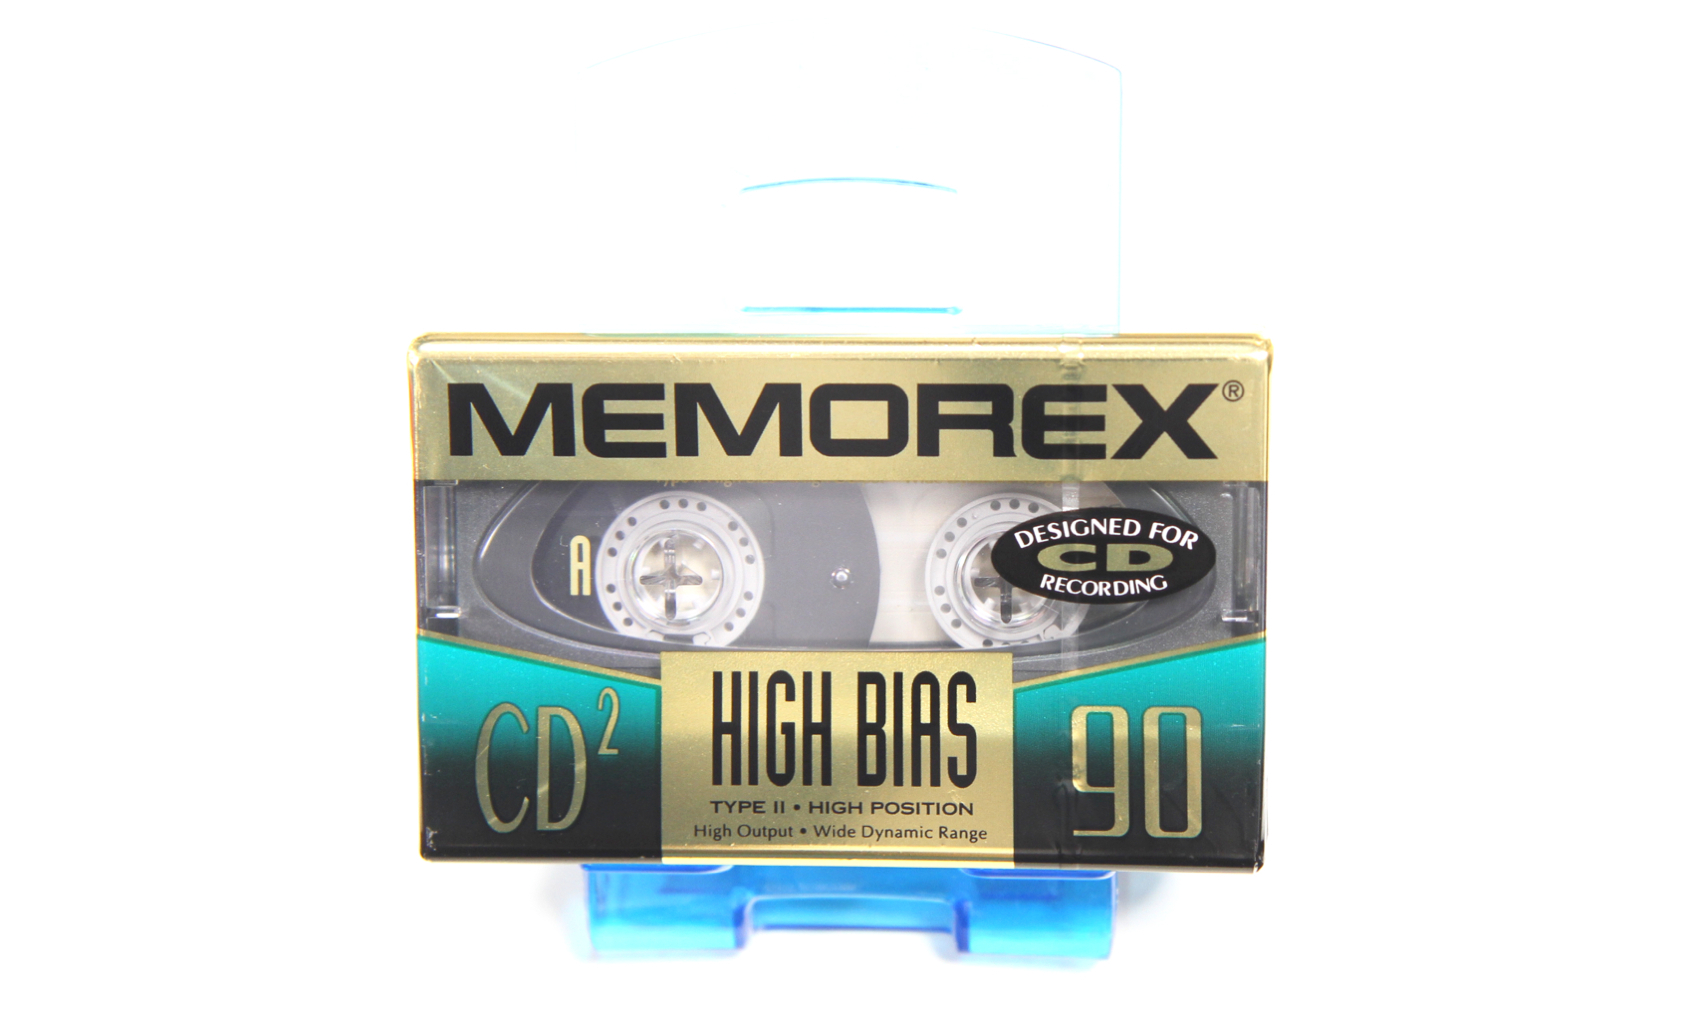 MEMOREX CD2-90 High Bias